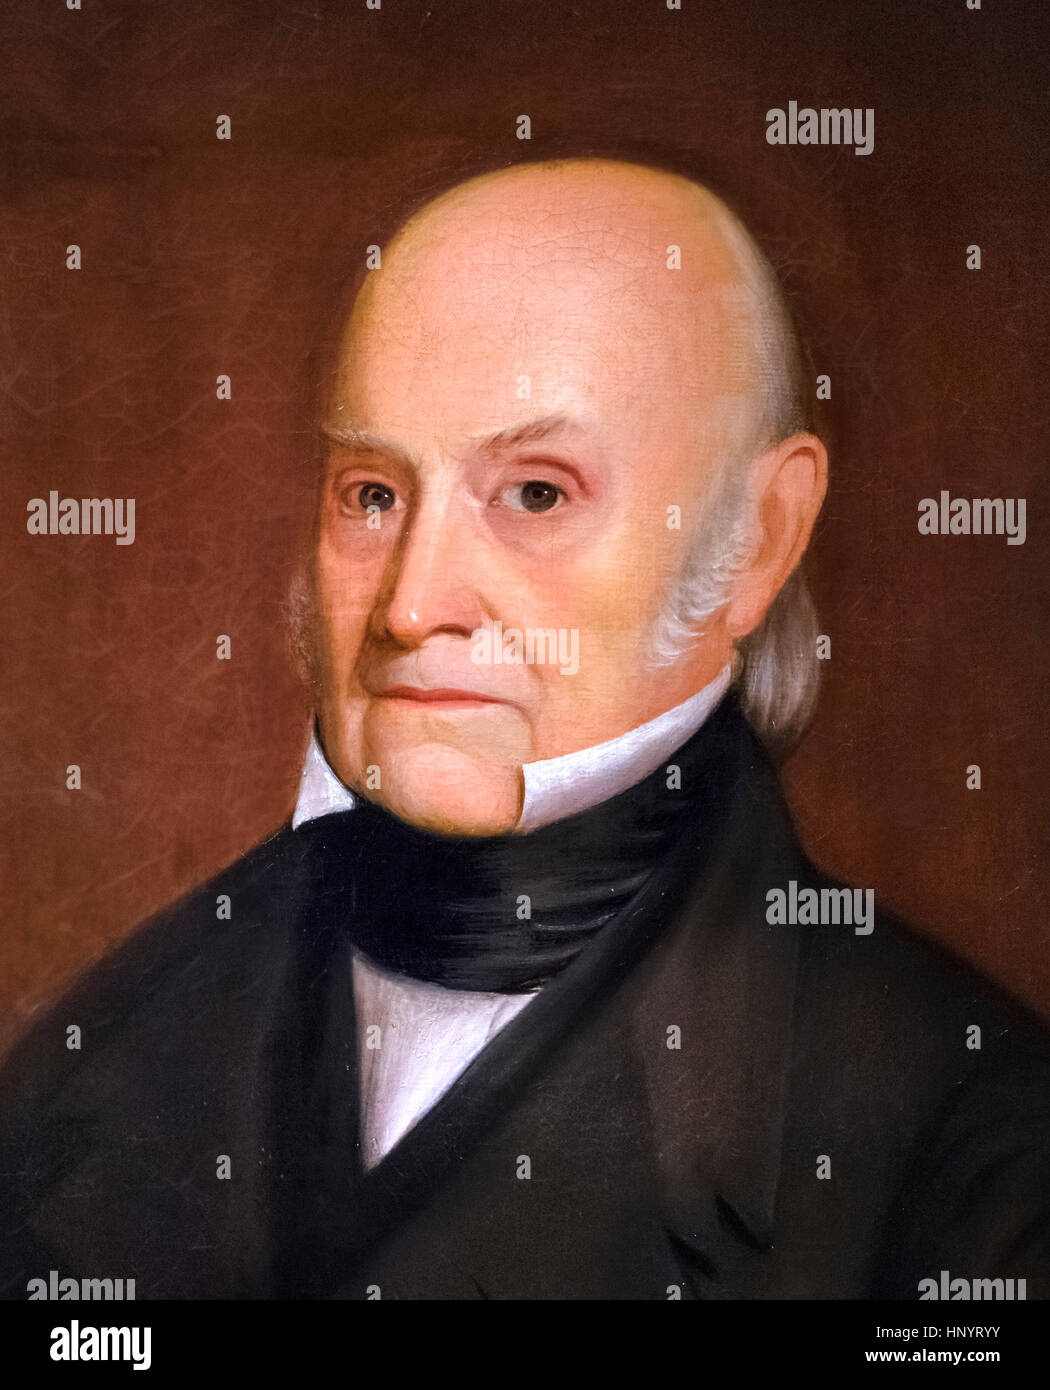 John Quincy Adams (1767-1848). Porträt des 6. US-Präsidenten von William Hudson Jr., Öl auf Leinwand, 1844. Detail aus einem größeren Gemälde, HNYT02. Stockfoto